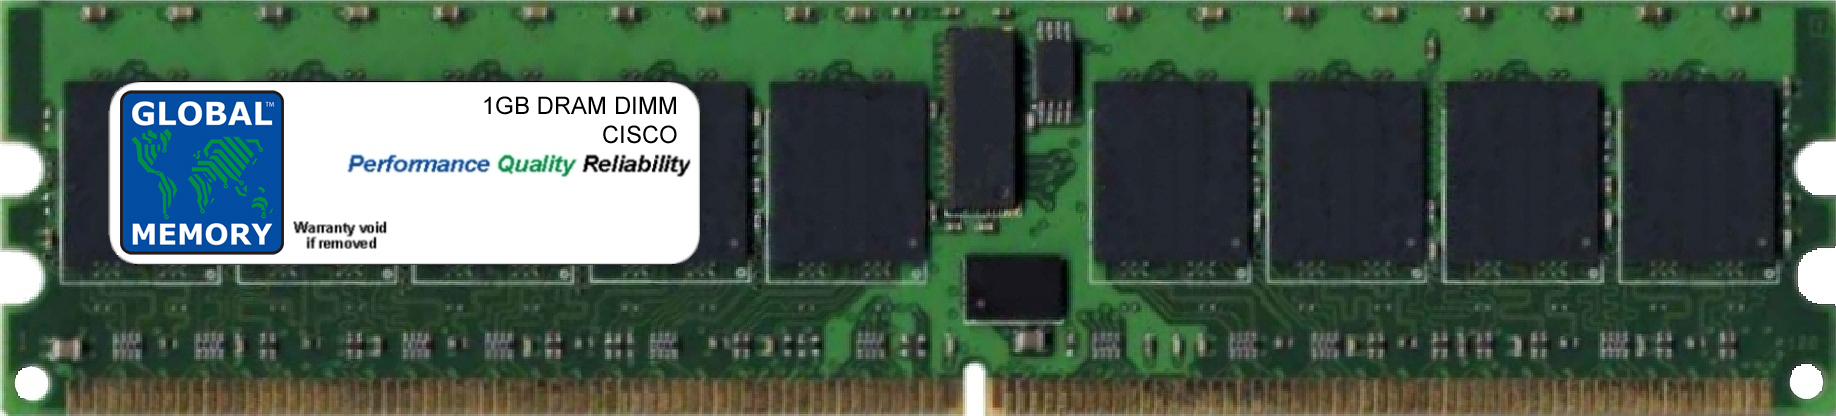 1GB DRAM DIMM MEMORY RAM FOR CISCO MEDIA CONVERGENCE SERVER MCS 7835-H2 (MEM-7835-H2-1GB)